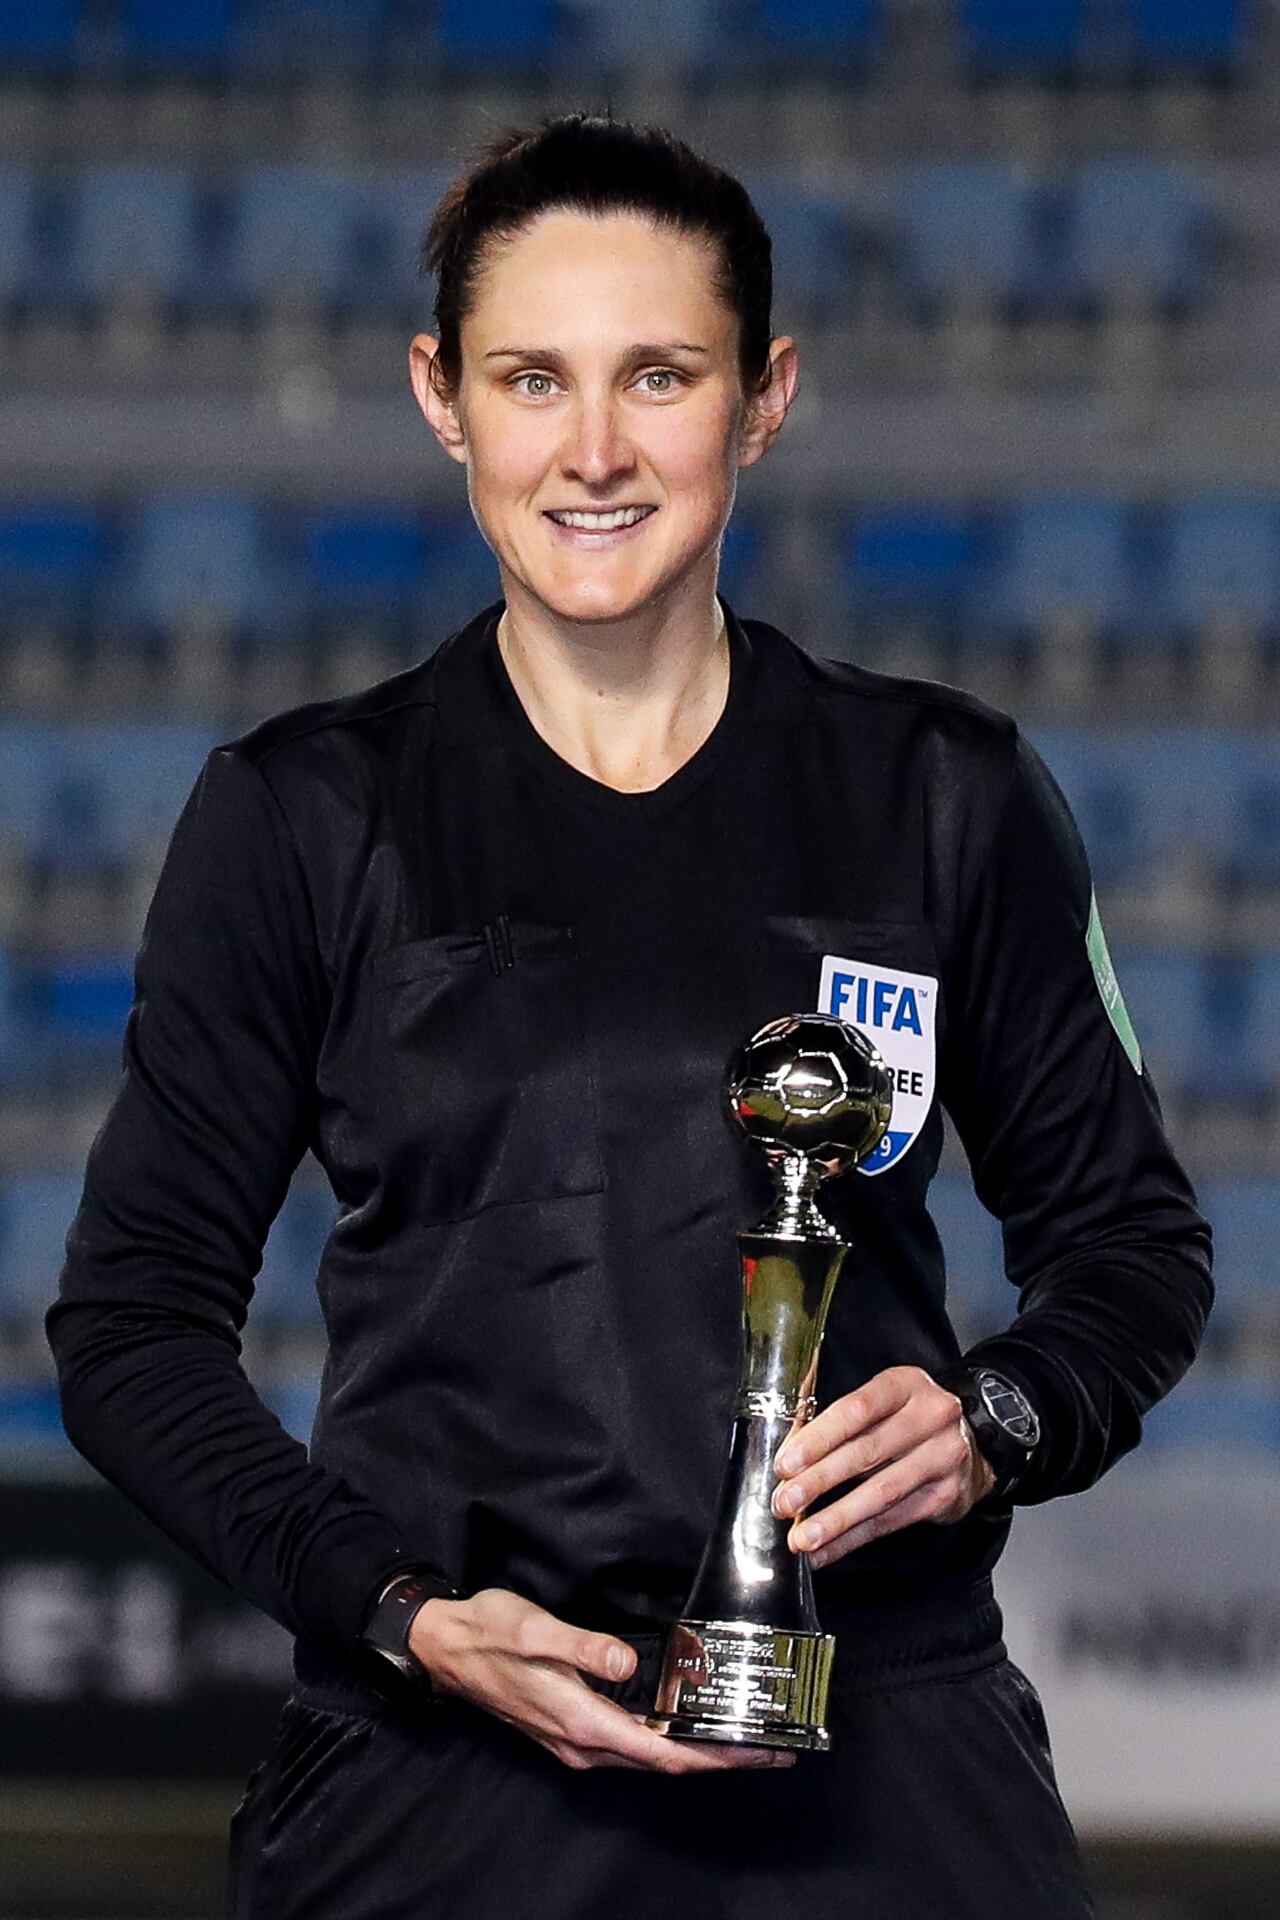 La árbitro Katherine Jacewicz de Australia asiste a la ceremonia de premiación después del partido de campeonato de fútbol EAFF E-1 entre Corea del Sur y Japón en el Estadio Gudeok de Busan el 17 de diciembre de 2019 en Busan, Corea del Sur. (Foto de Zhizhao Wu/Getty Images)